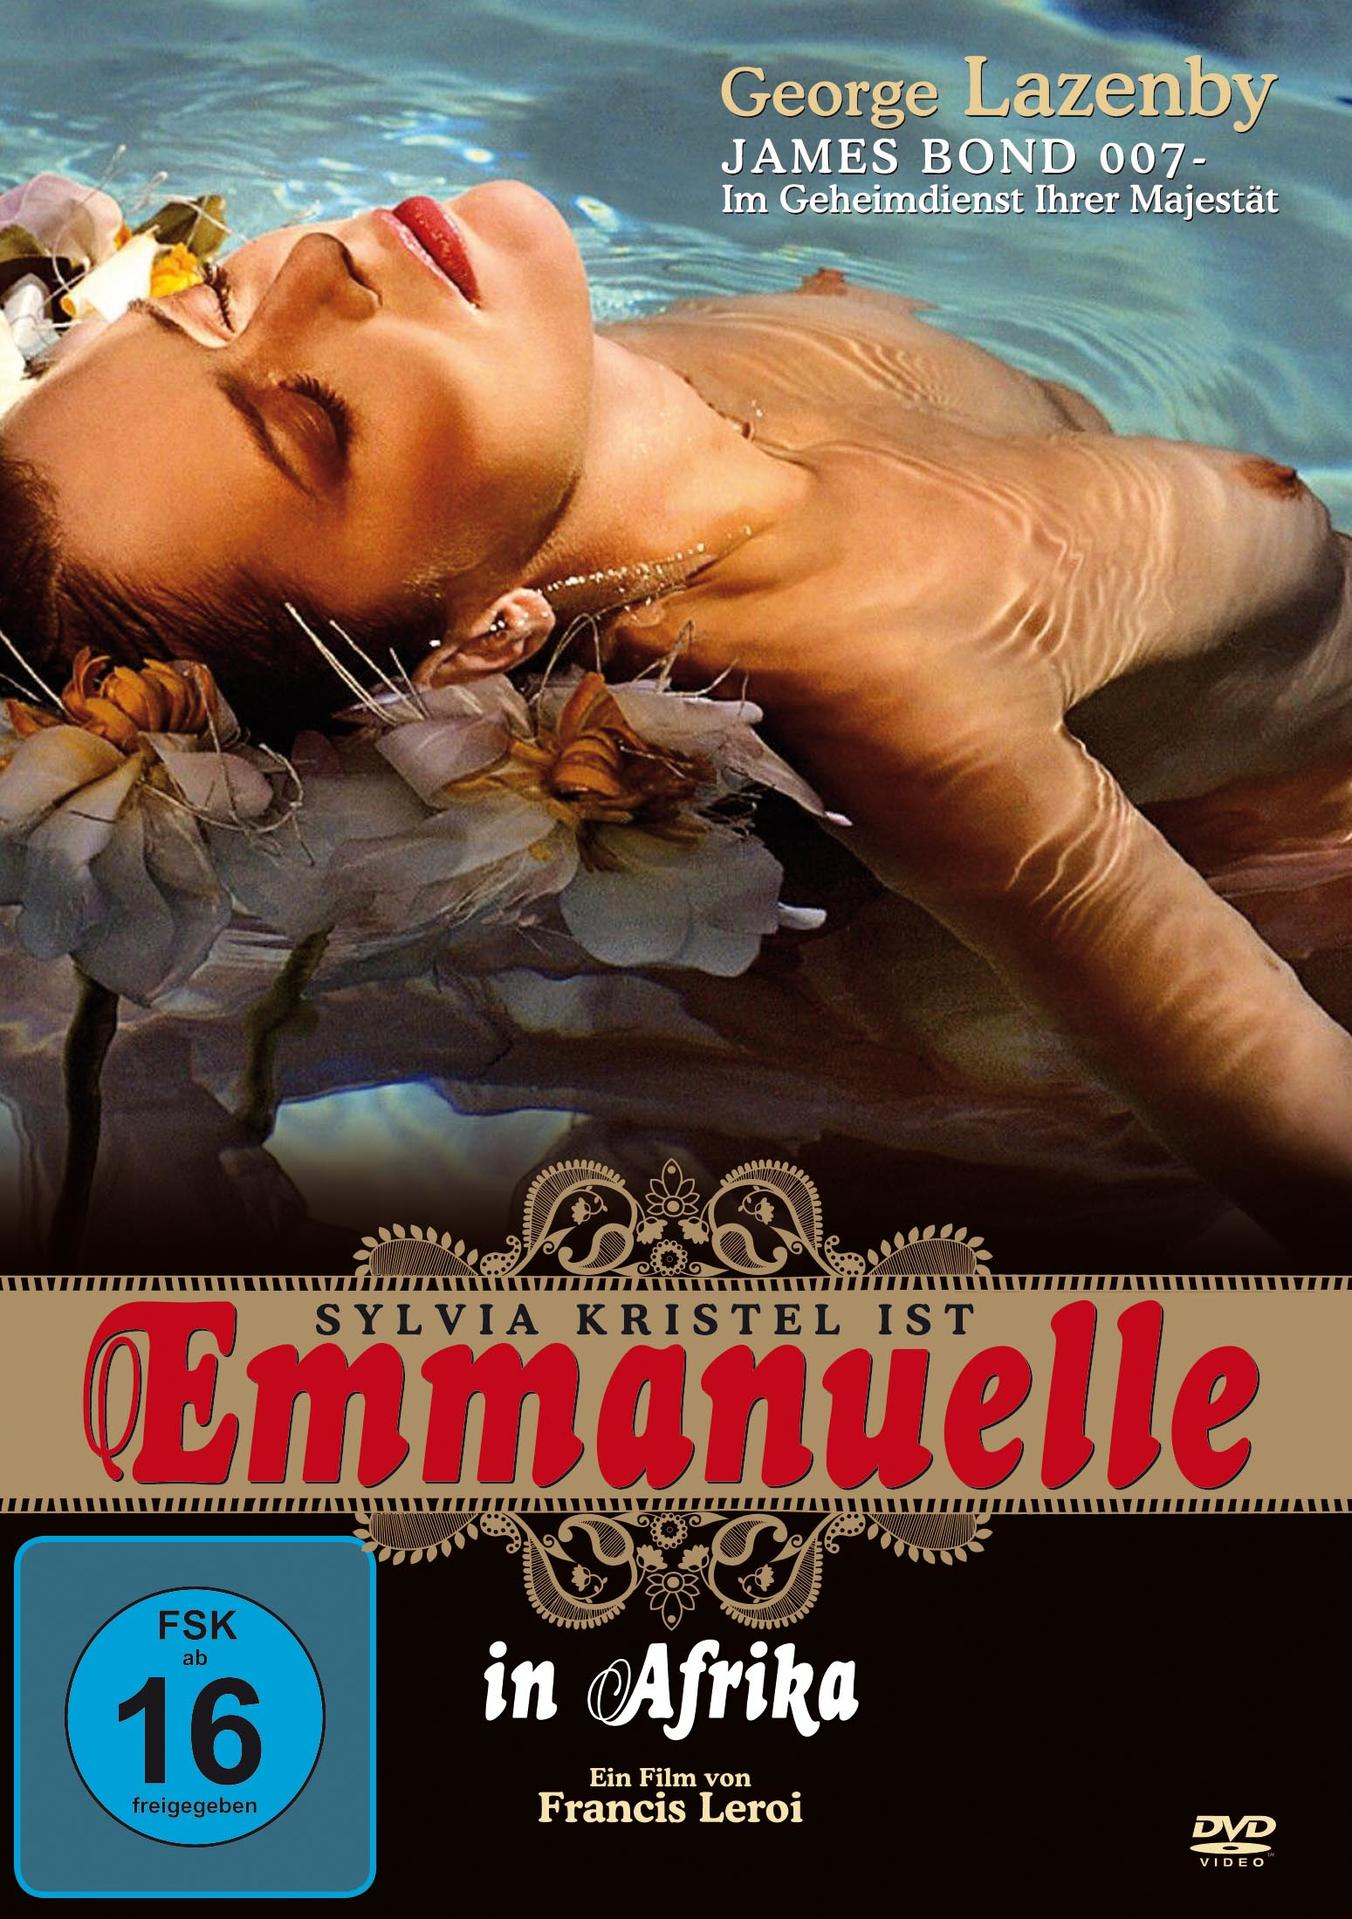 Emanuelle in DVD Afrika